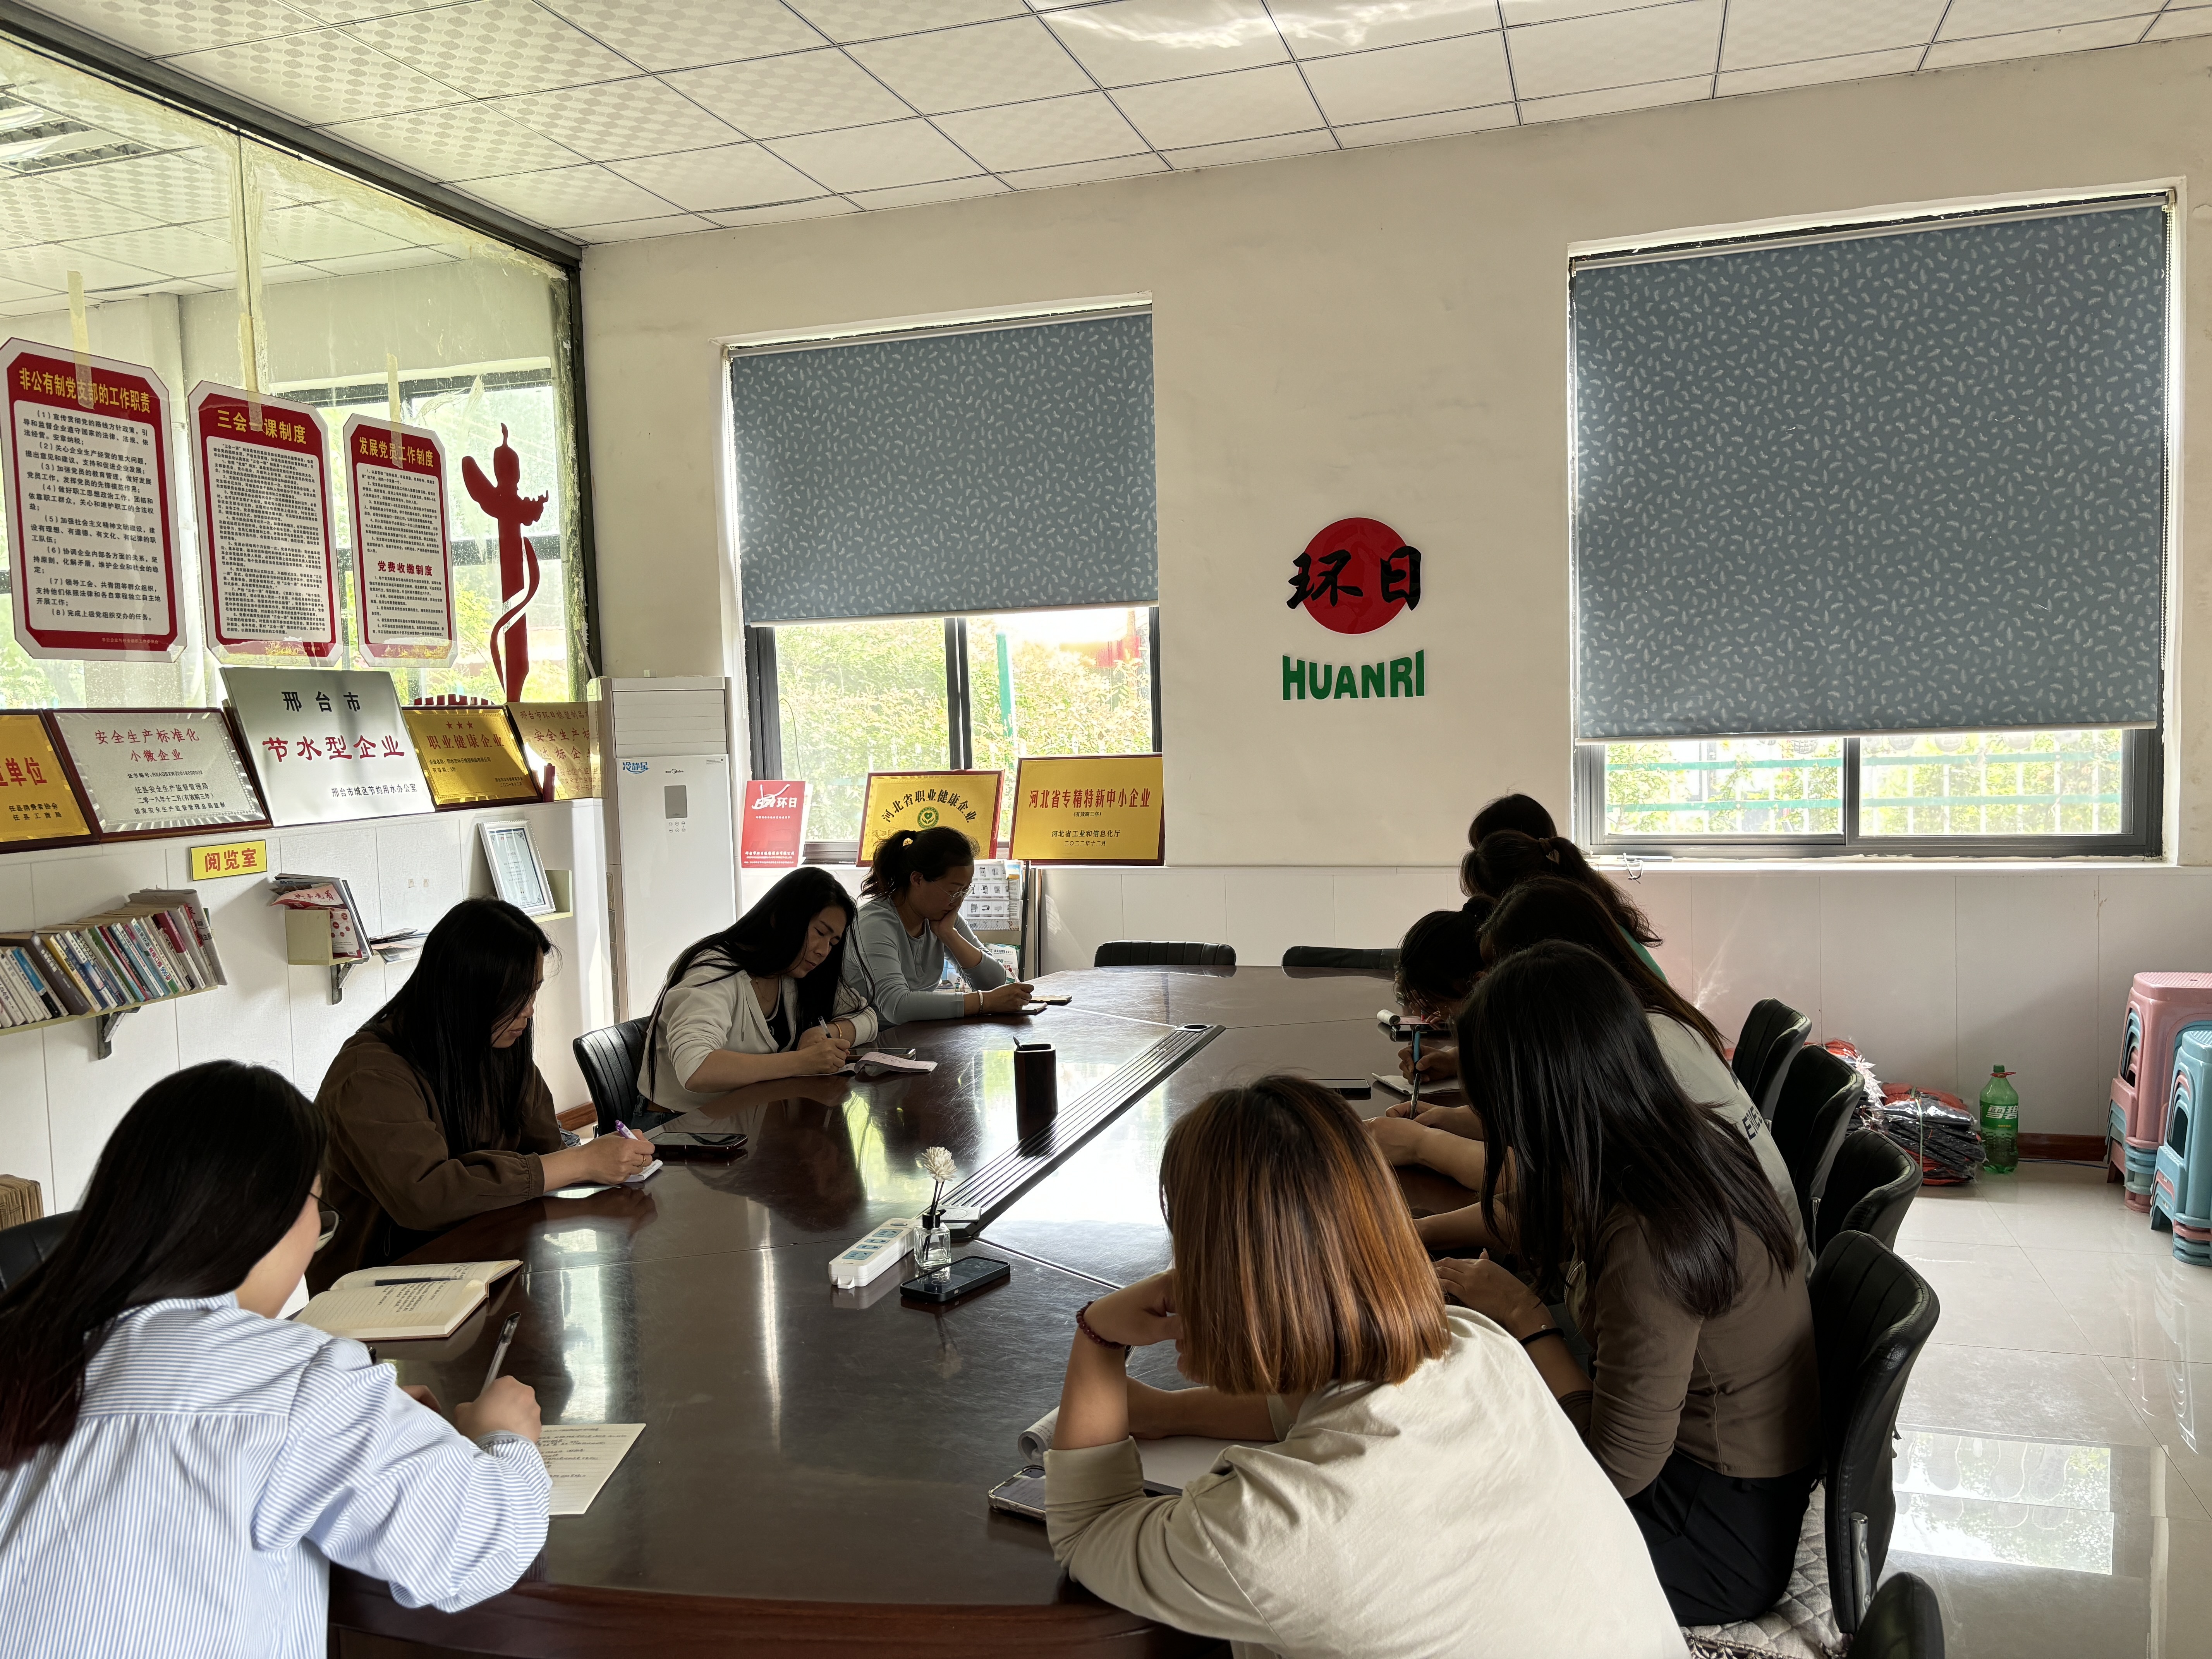 邢臺市環日橡塑制品有限公司進行女人能量學習會議